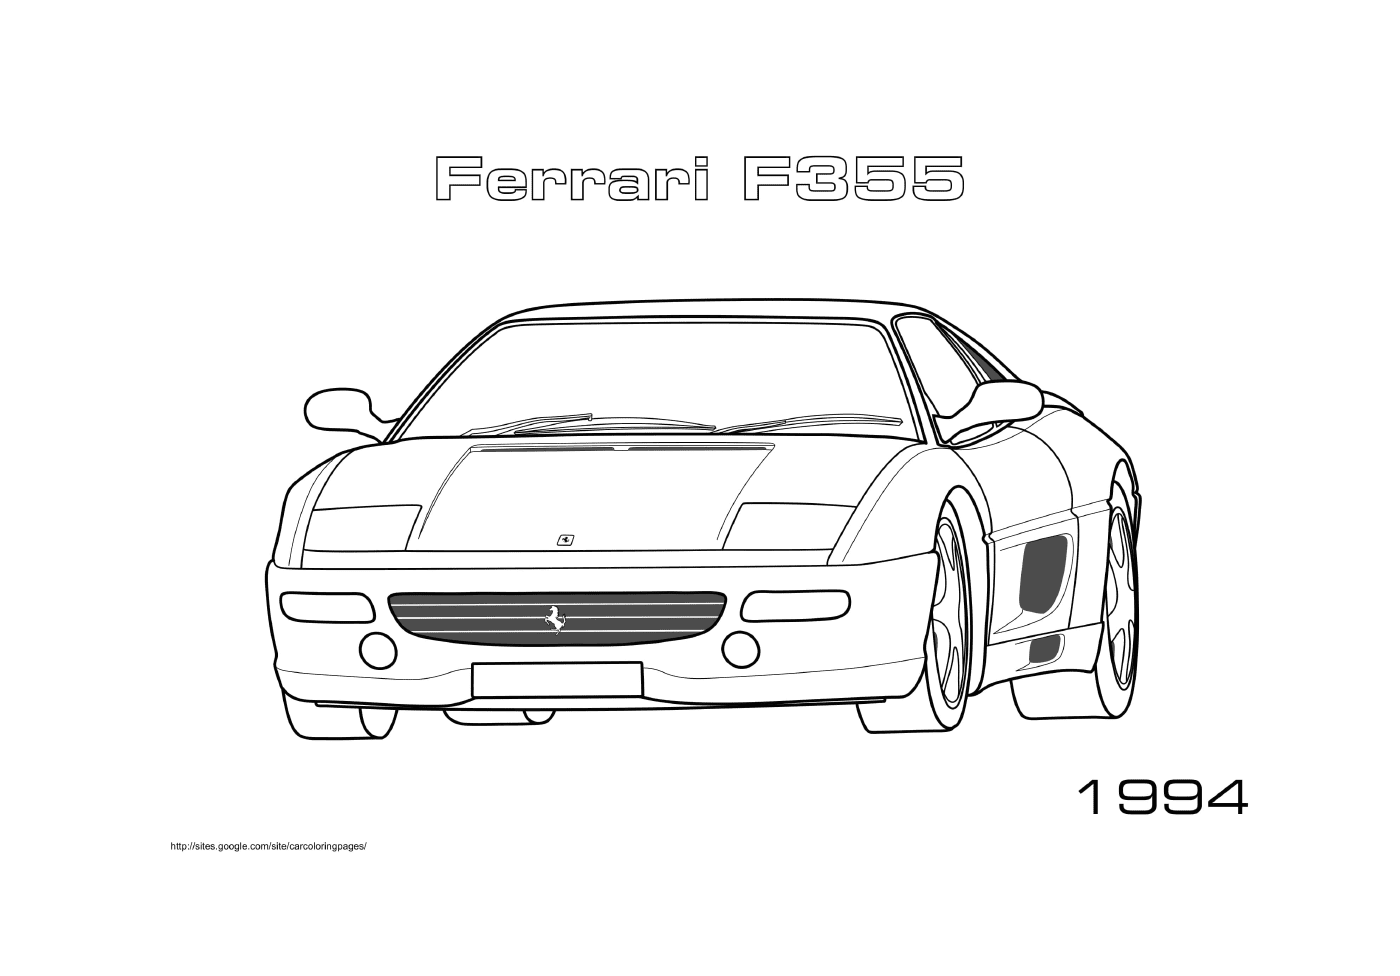   Une voiture Ferrari F355 1994 